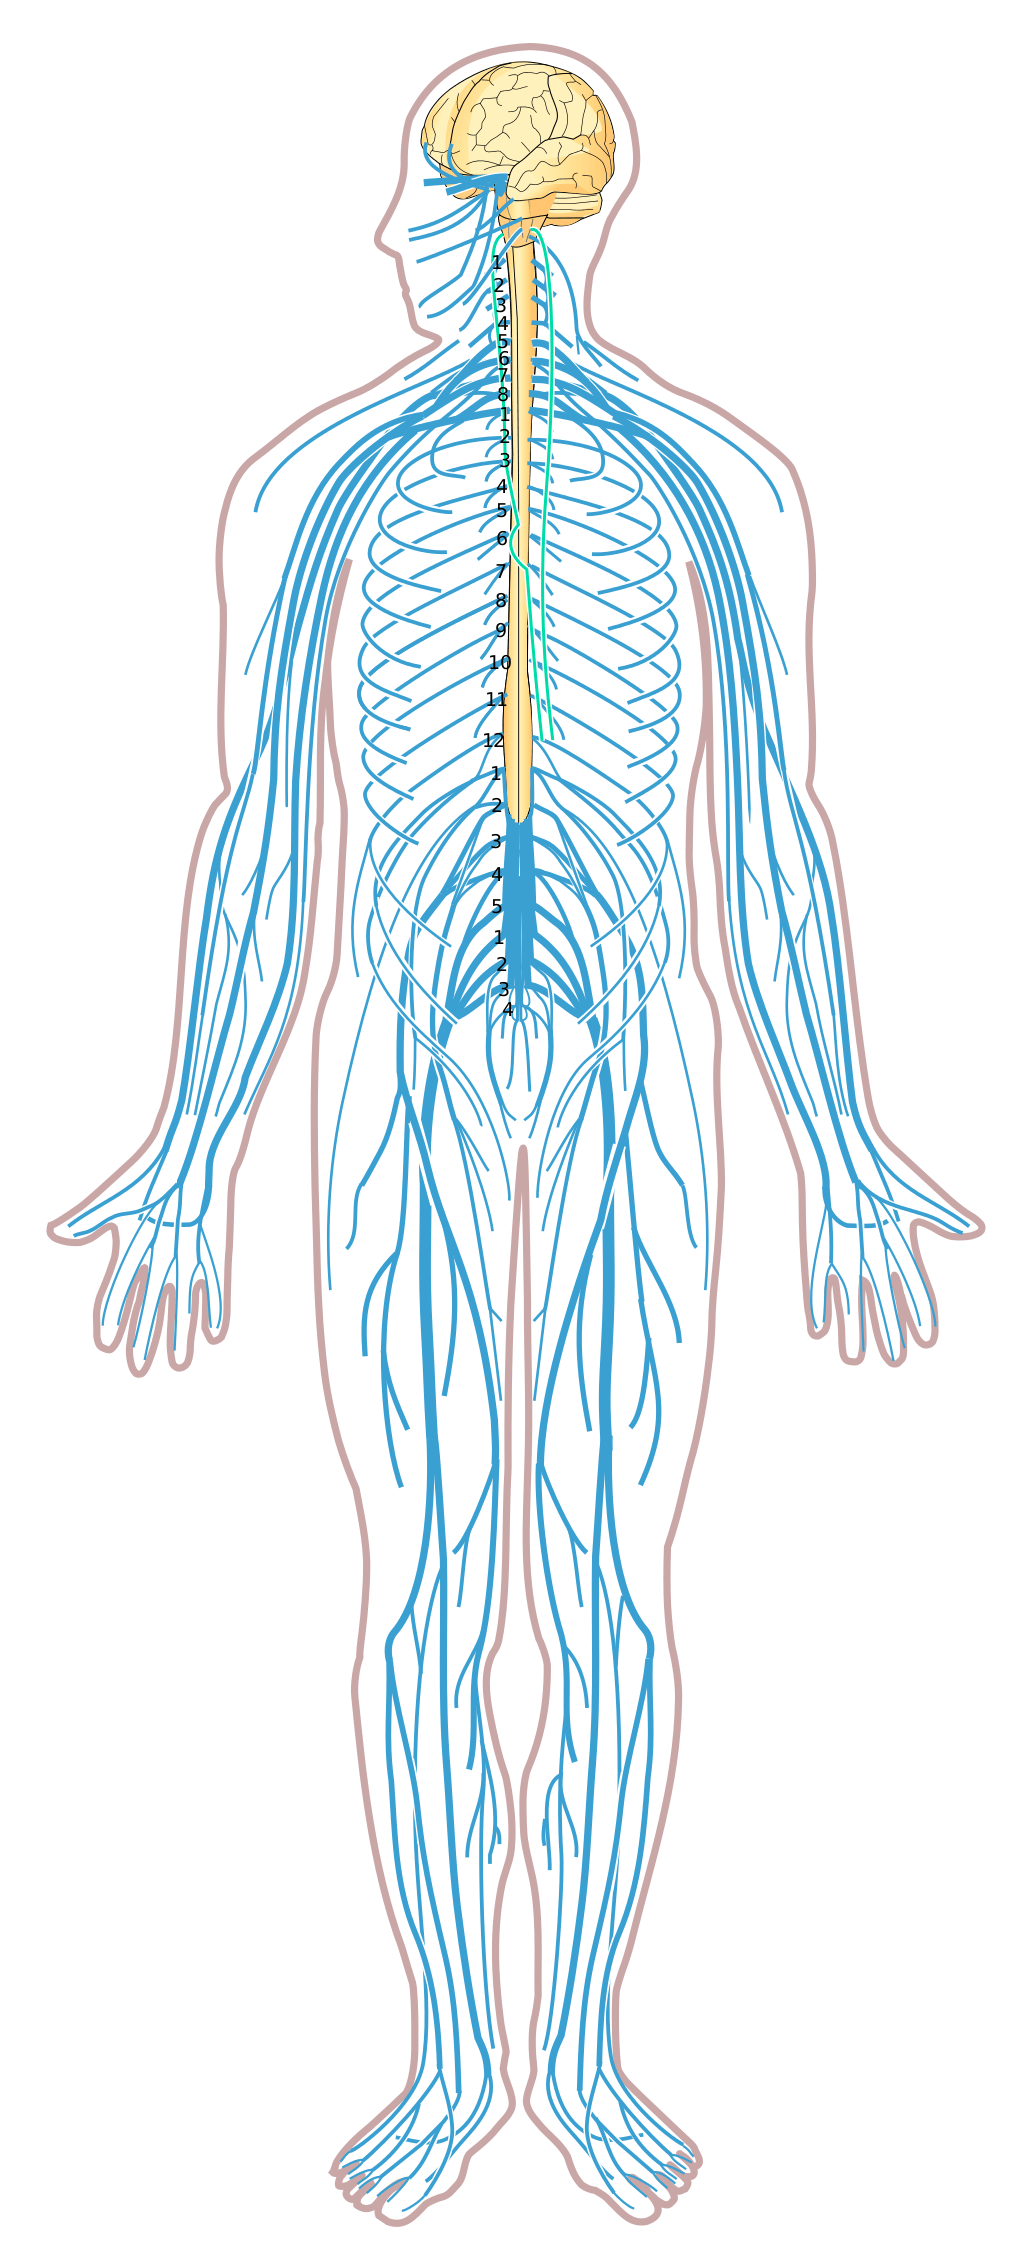 the-nervous-system-3-nervous-system-quiz-quizizz